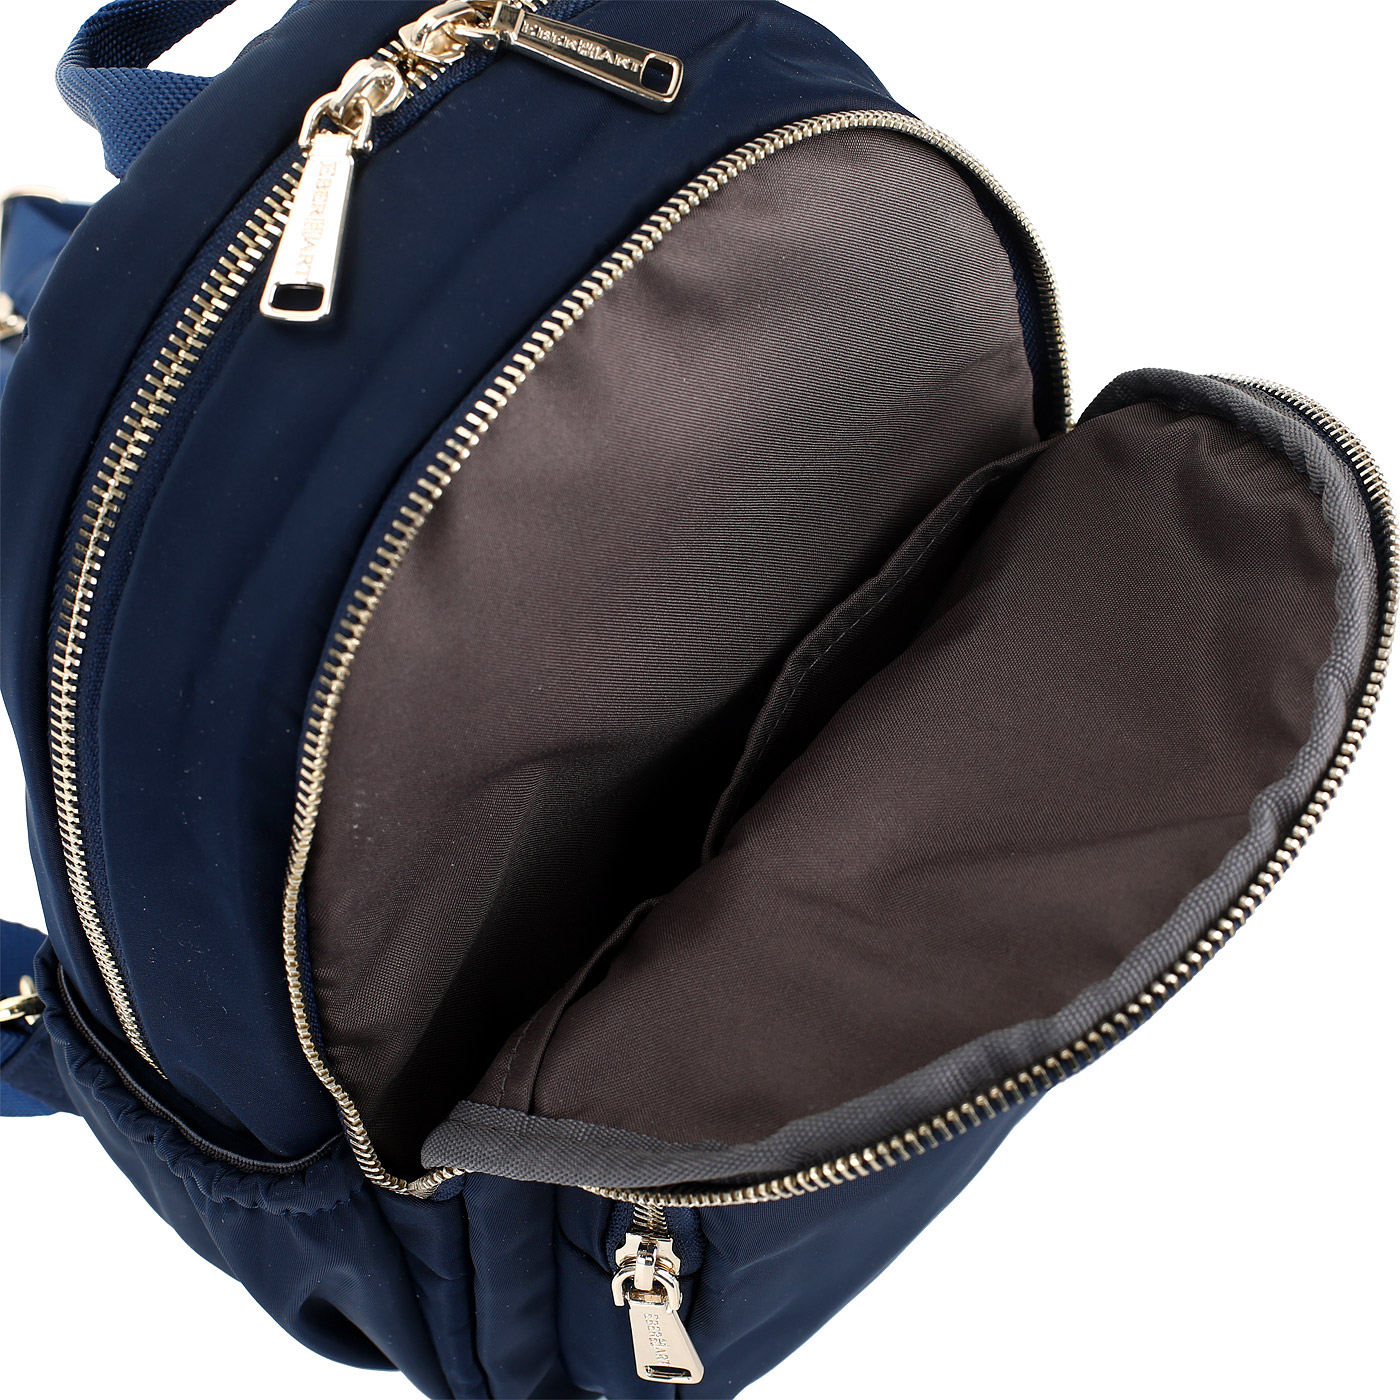 Рюкзак с двумя отделами Eberhart Backpack